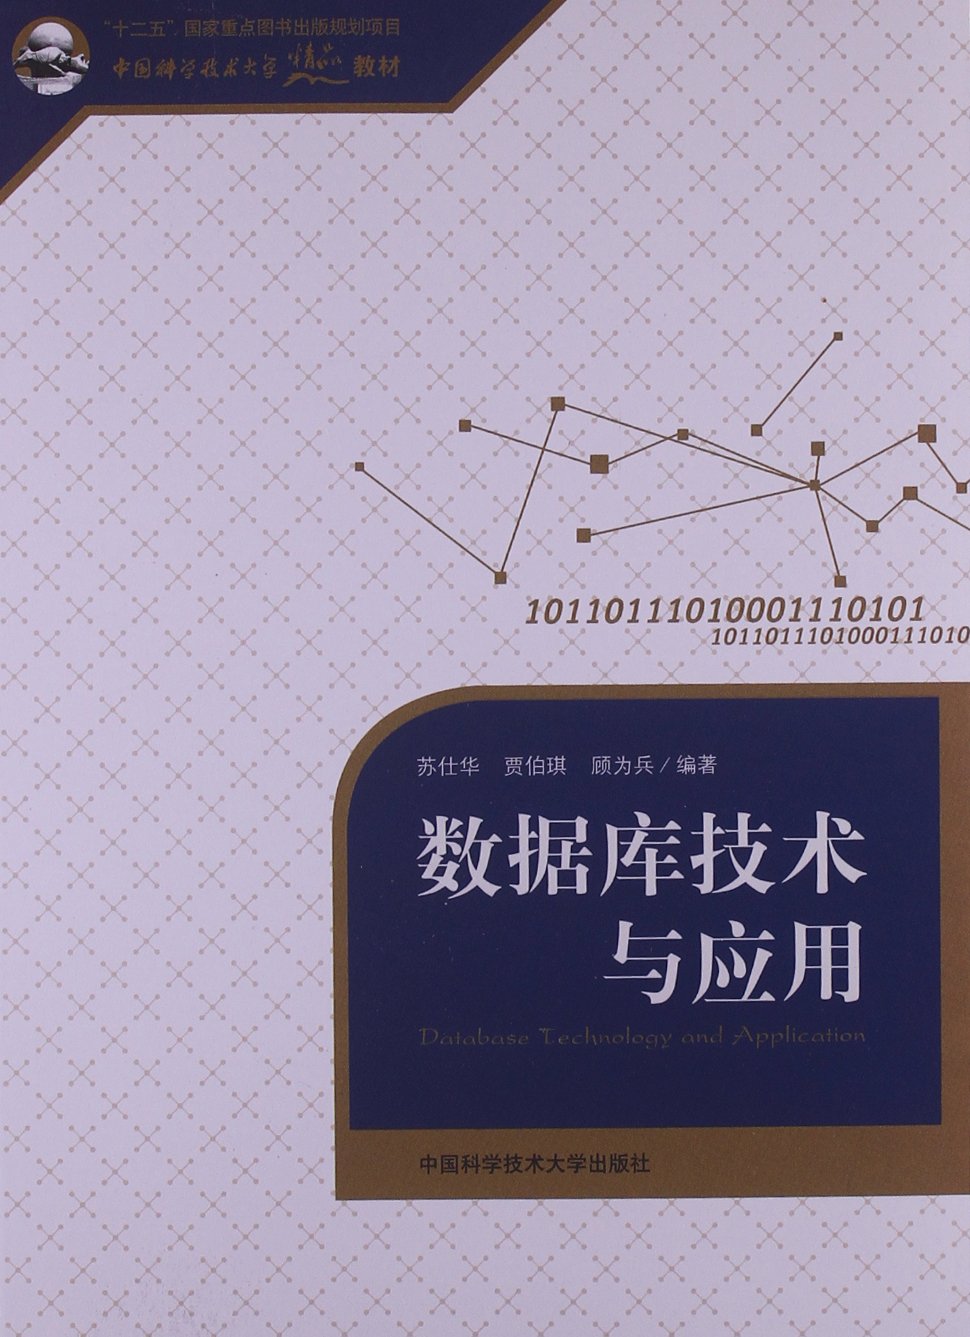 資料庫技術與套用(中國科學技術大學出版社出版書籍)